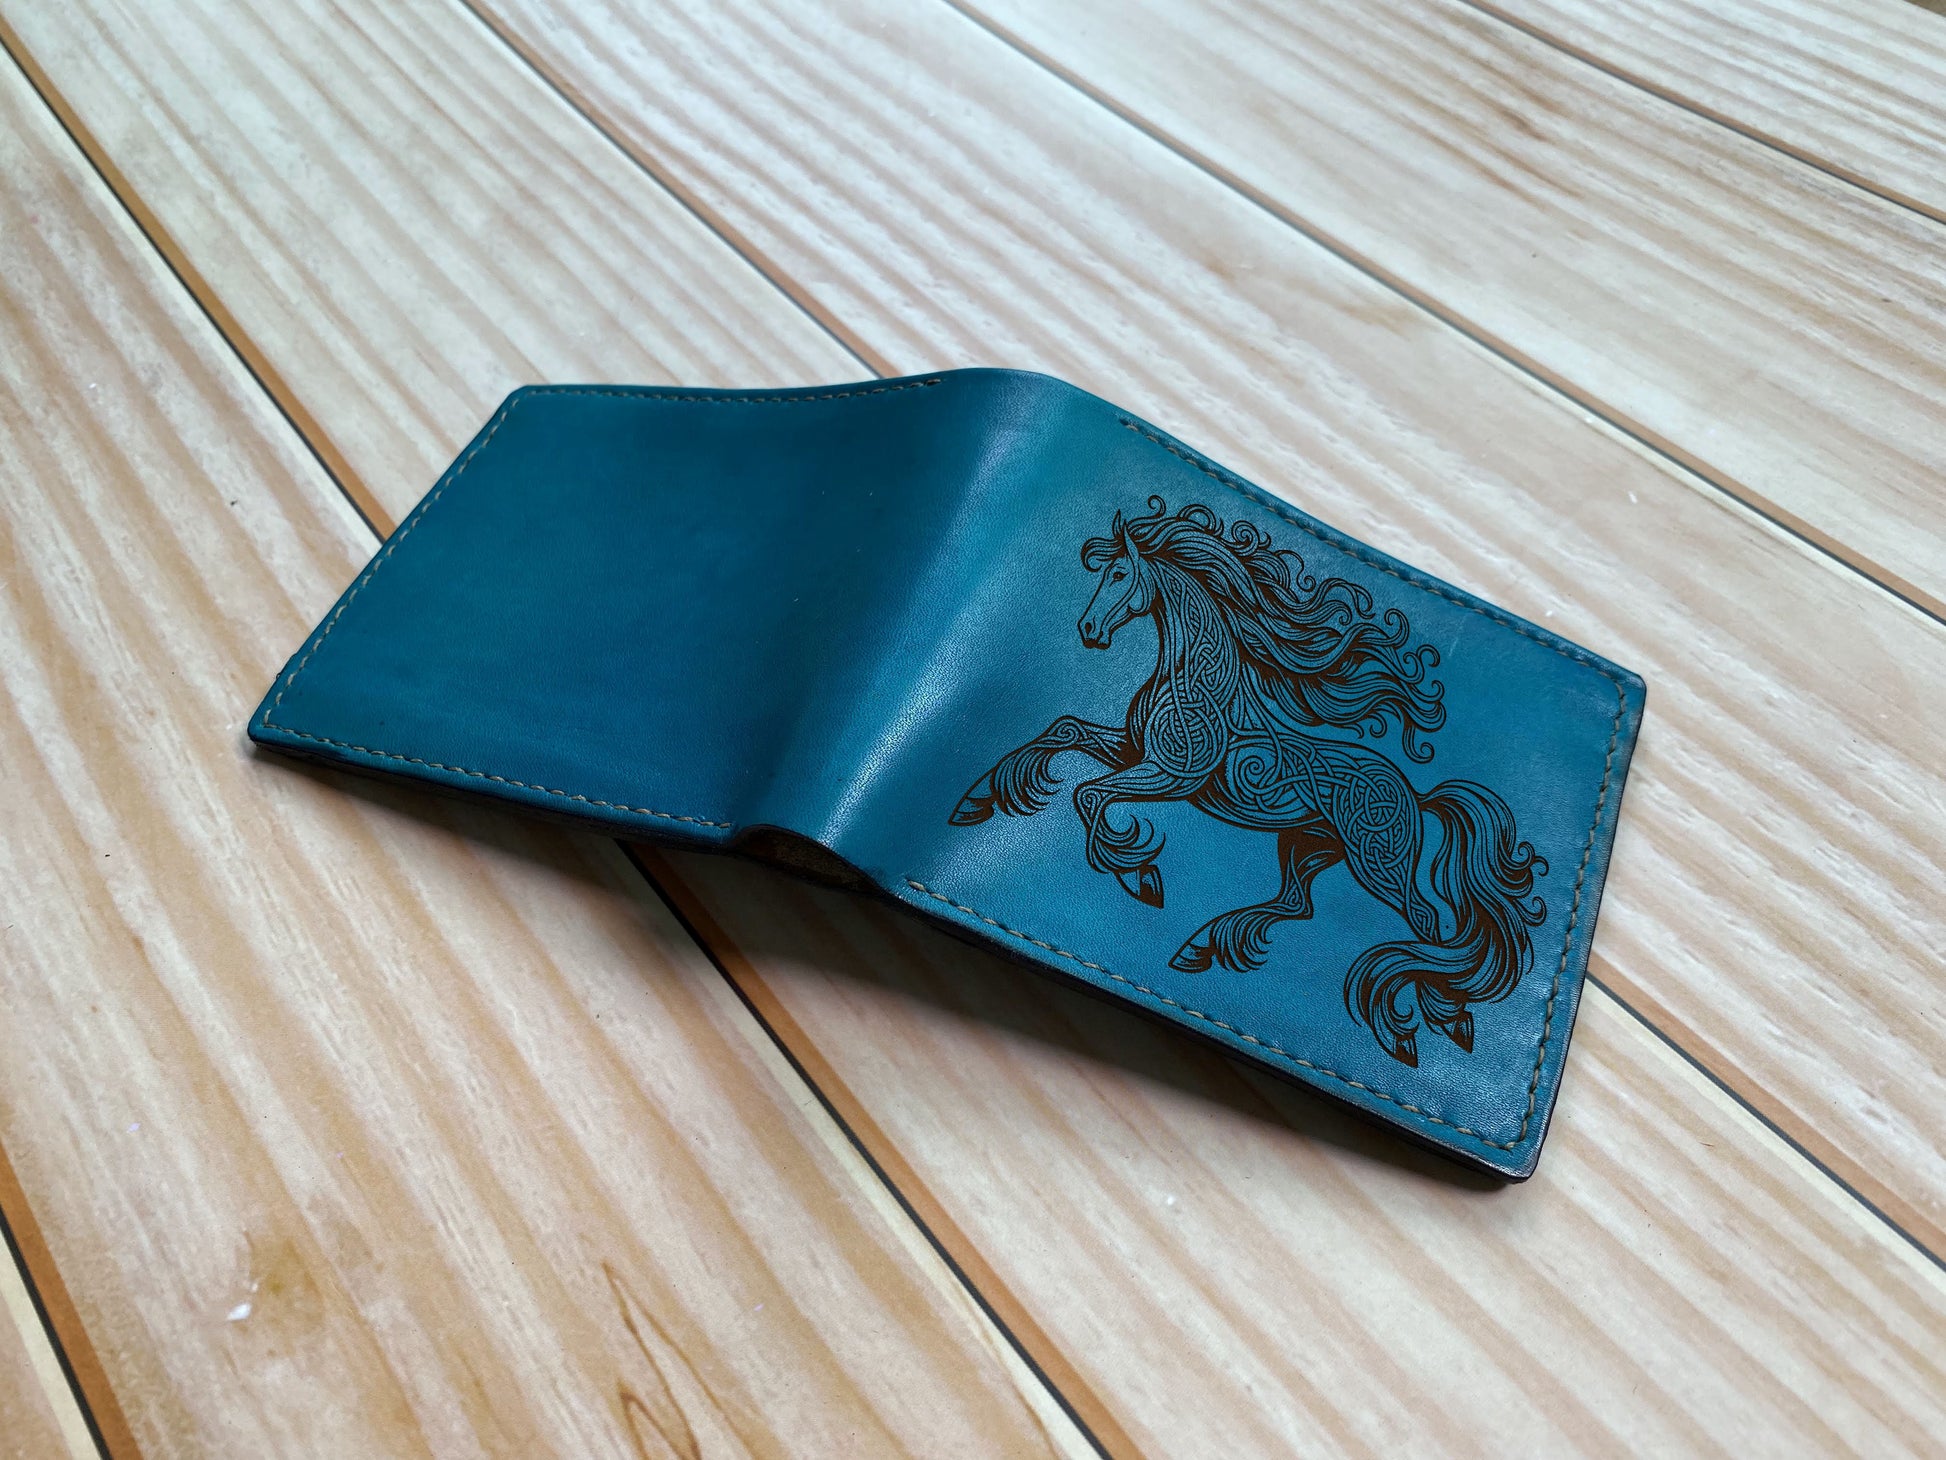 Custom leather gift for men, Celtic pattern leather wallet, horse gift for boyfriend, wallet for husband, horse art leather anniversary gift